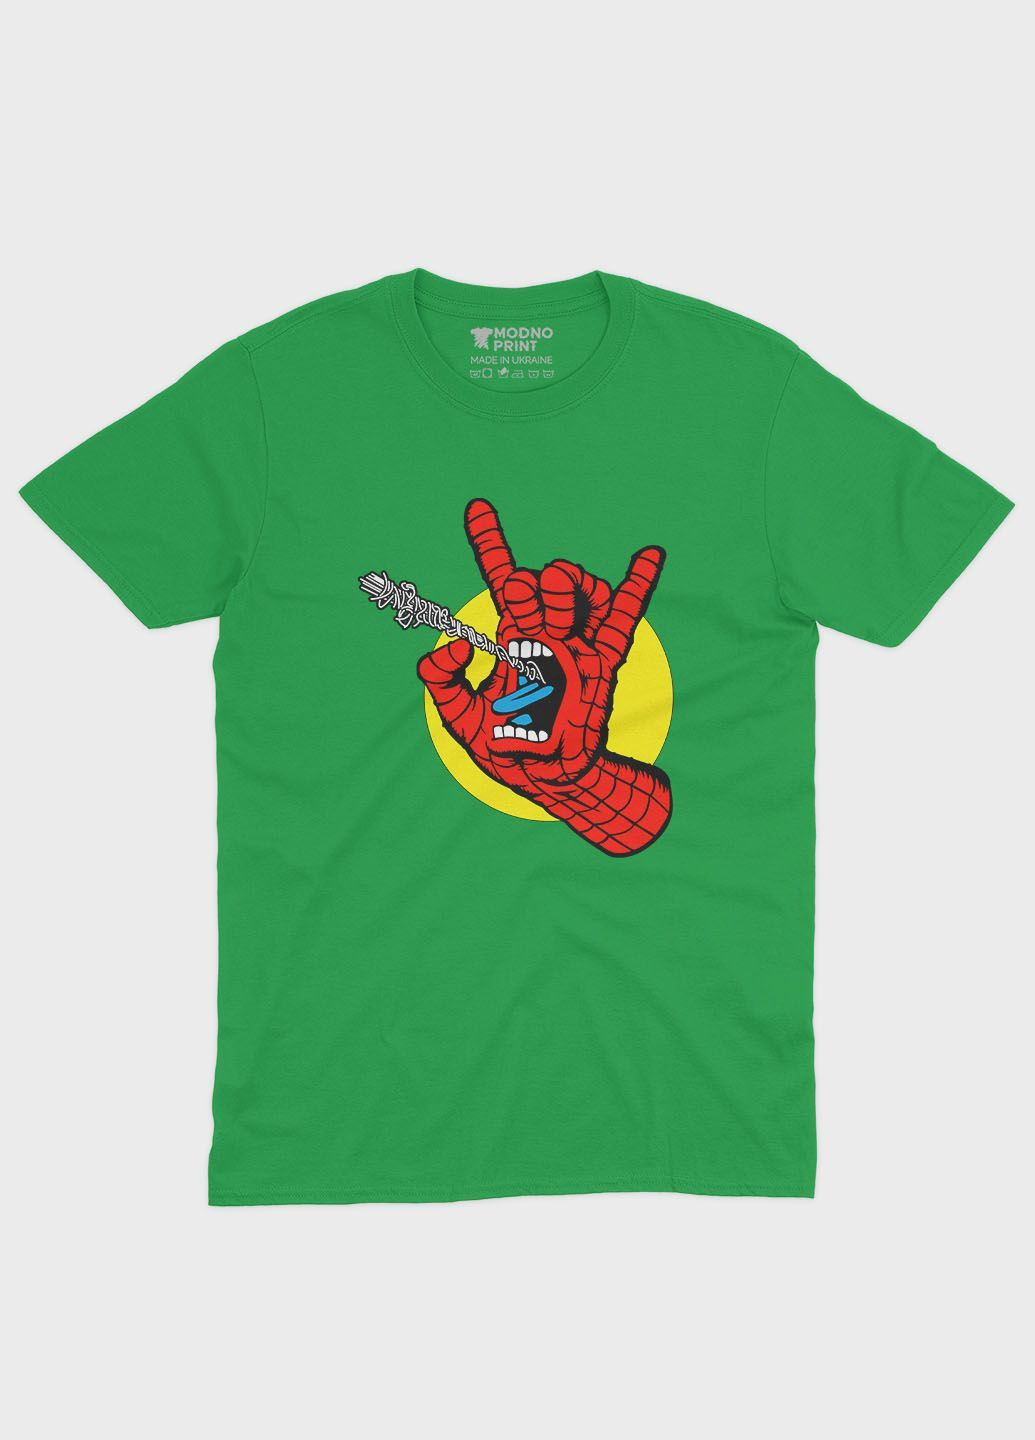 Зелена демісезонна футболка для хлопчика з принтом супергероя - людина-павук (ts001-1-keg-006-014-103-b) Modno